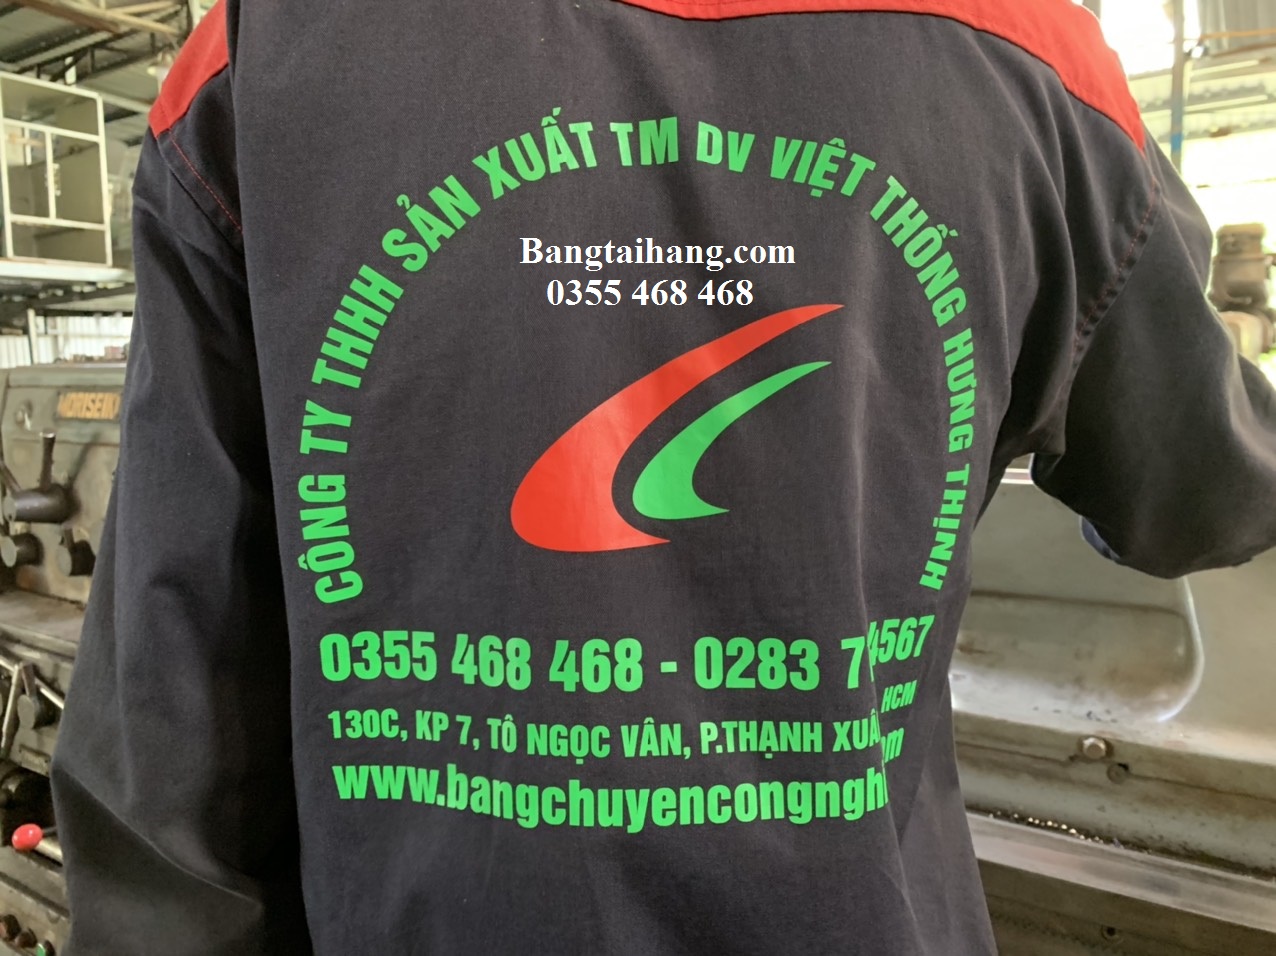 Cửa lưới chống muỗi chất lượng tại công ty Việt Thống